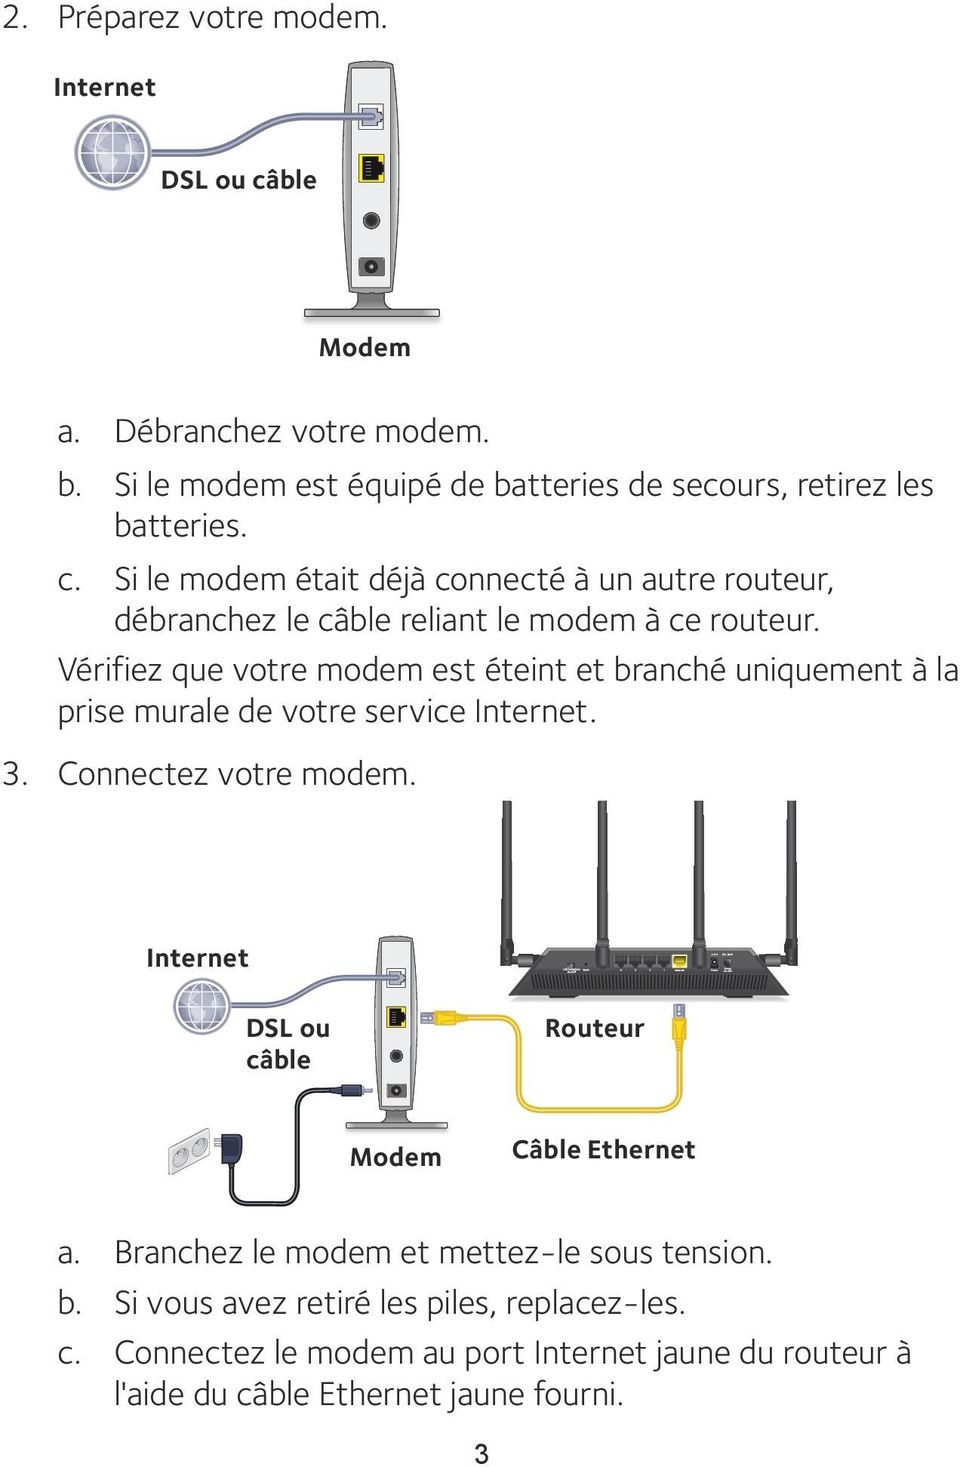 Internet DSL ou câble Routeur Modem Câble Ethernet a. Branchez le modem et mettez-le sous tension. b. Si vous avez retiré les piles, replacez-les. c. Connectez le modem au port Internet jaune du routeur à l'aide du câble Ethernet jaune fourni.